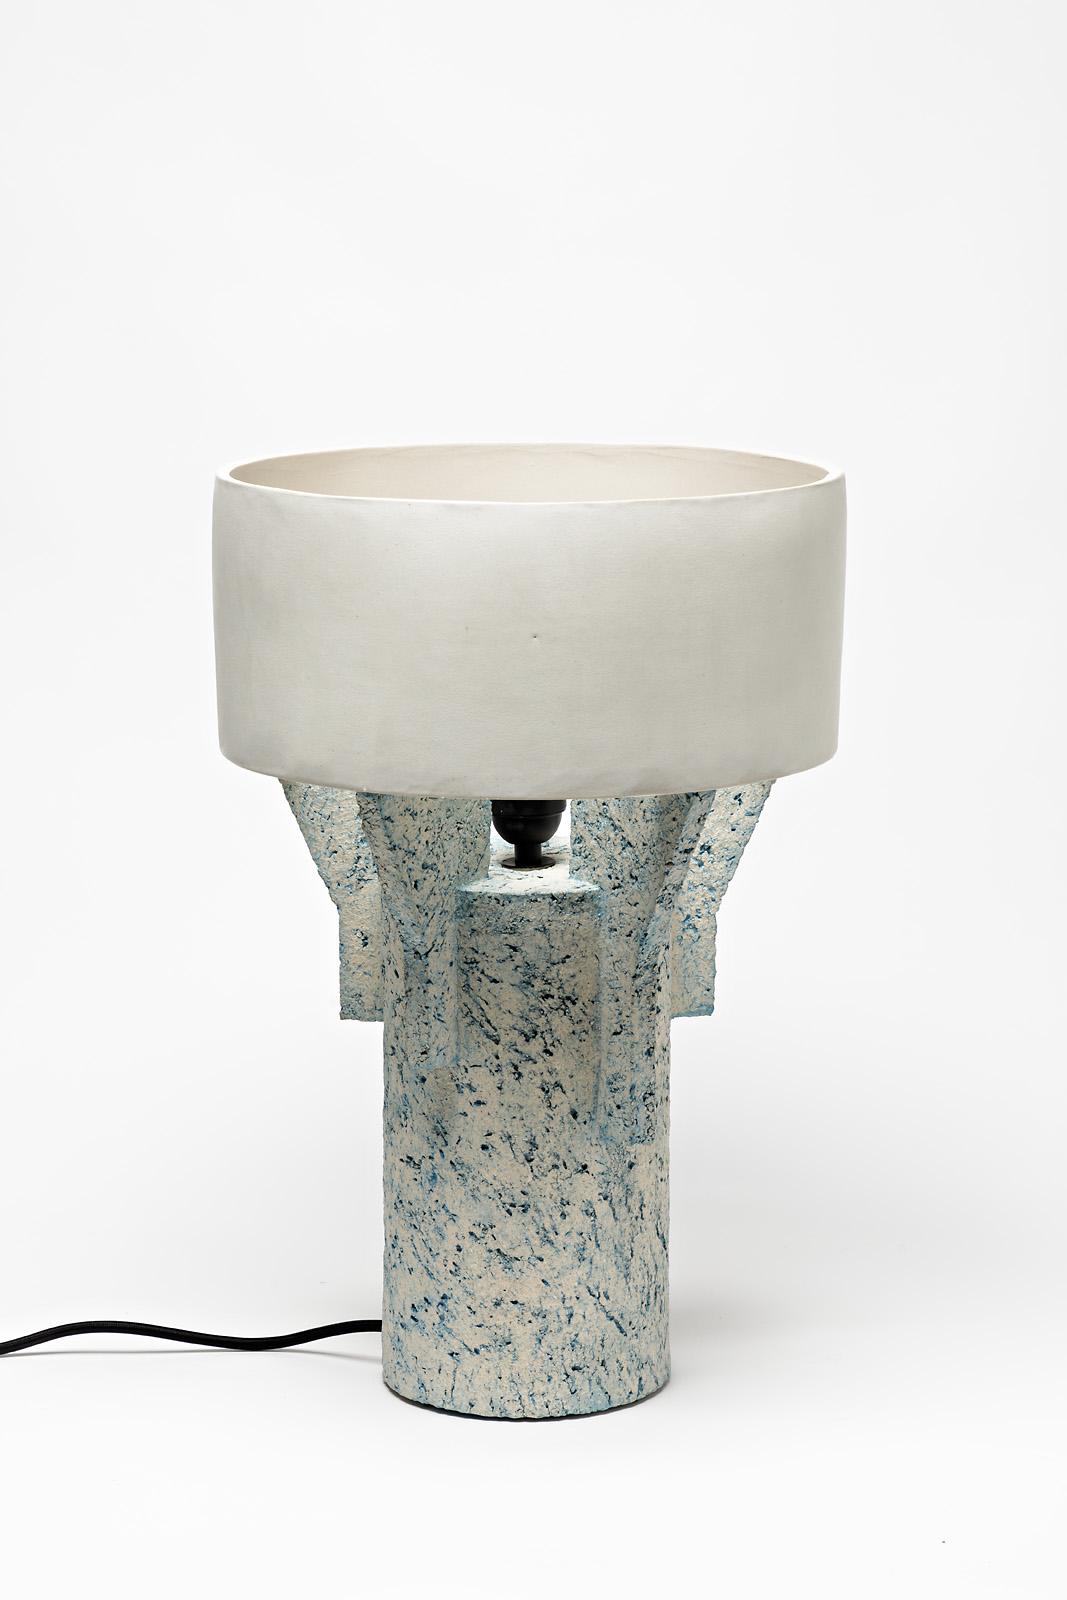 Tischlampe aus Keramik von Denis Castaing mit weißem Glasurdekor.
Der Sockel und der Lampenschirm sind aus Keramik.
Verkauft mit einem europäischen elektrischen System.
Perfekter Originalzustand,
2019.
Unter dem Sockel signiert.